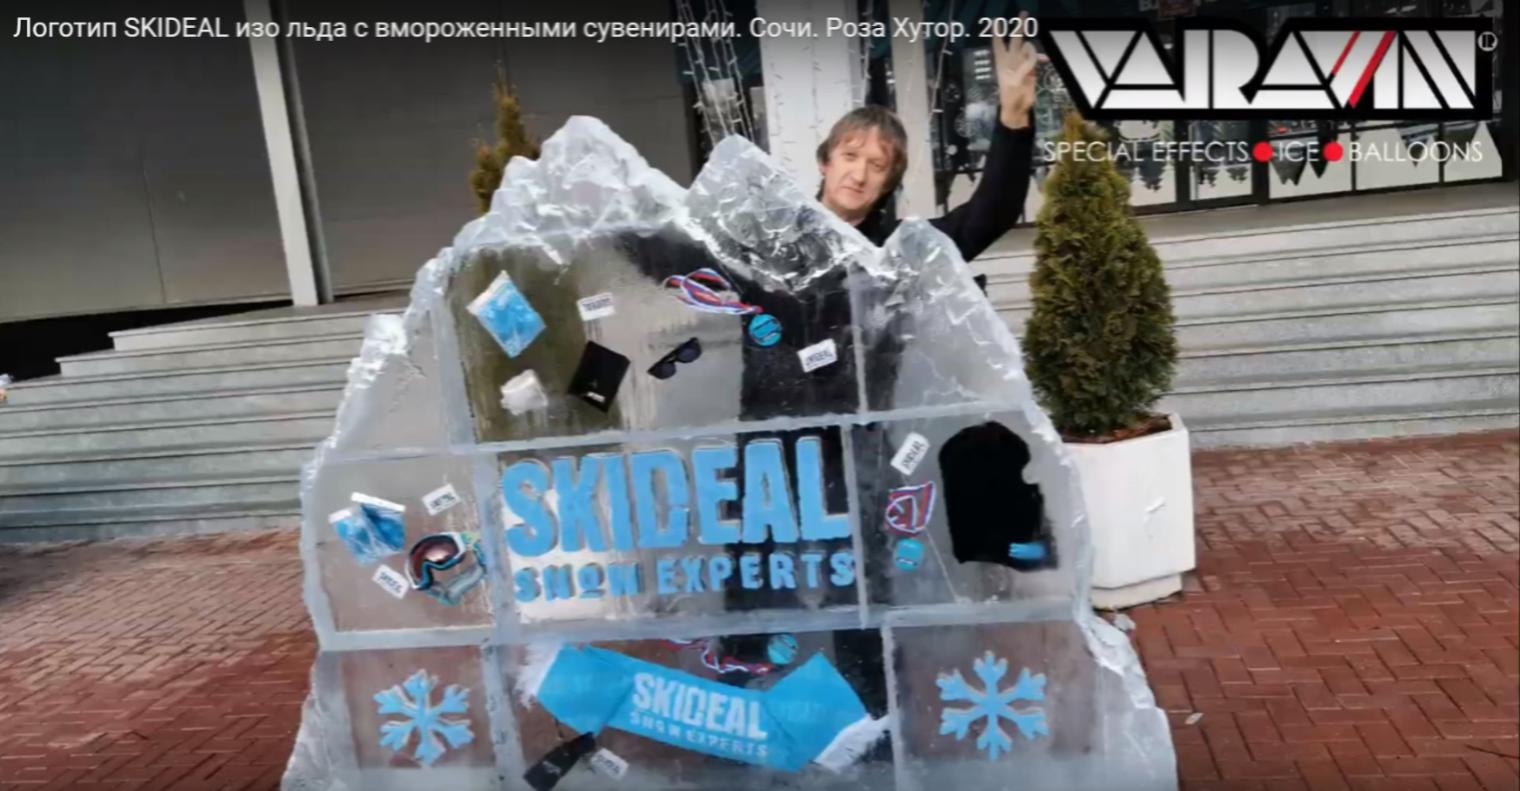 Логотип SKIDEAL изо льда с вмороженными сувенирами. Сочи. Роза Хутор. 2020